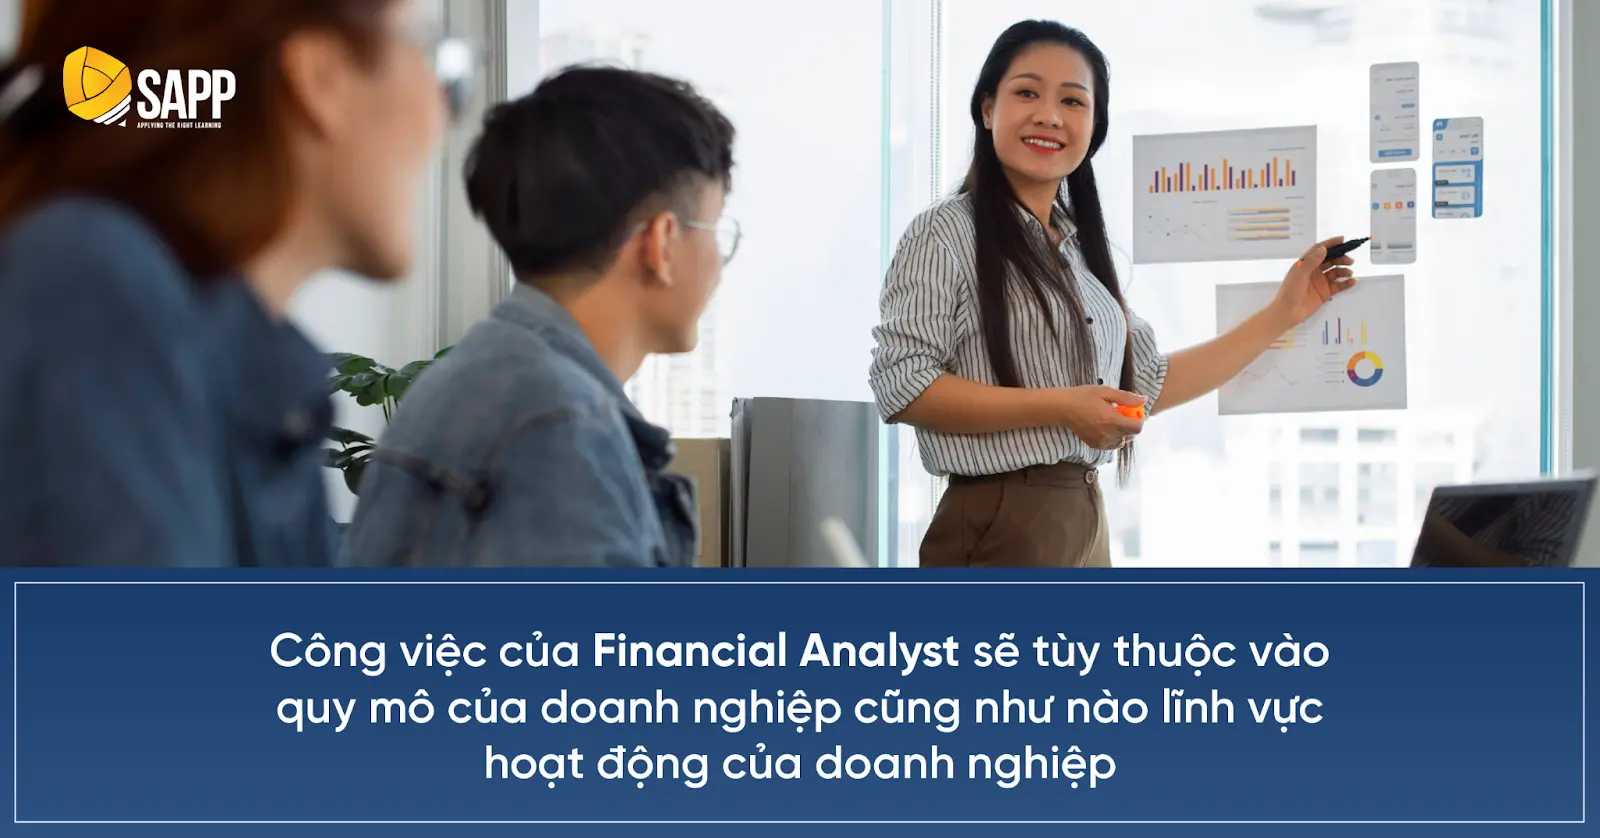 Công việc của Financial Analyst sẽ tuỳ thuộc vào quy mô doanh nghiệp cũng như lĩnh vực hoạt động của doanh nghiệp